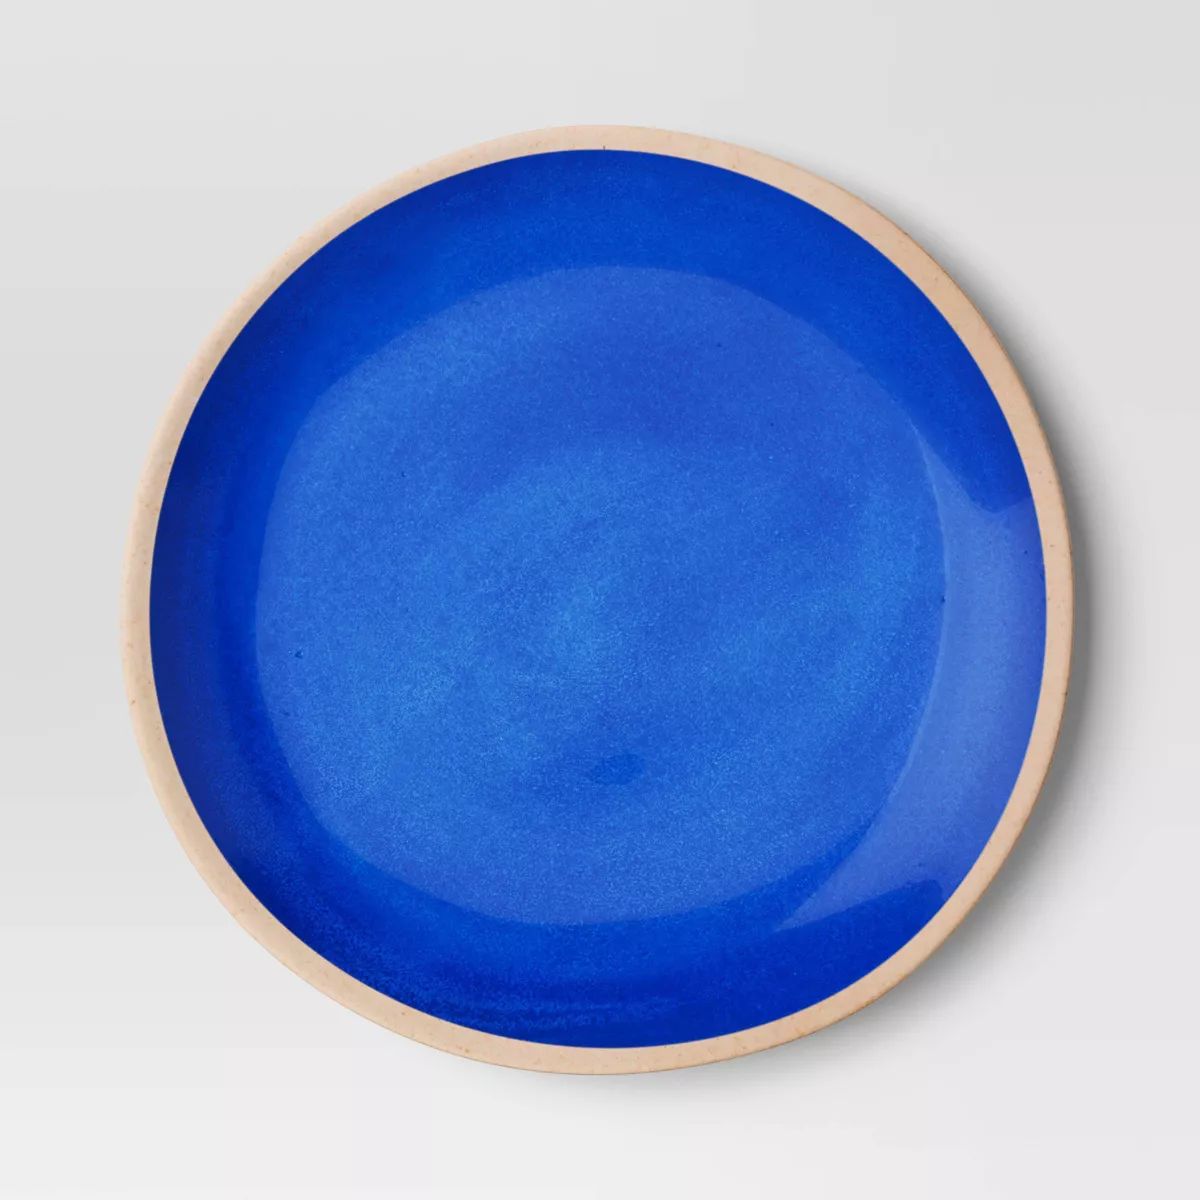 10.5" Dinner Plate - Threshold™ | Target